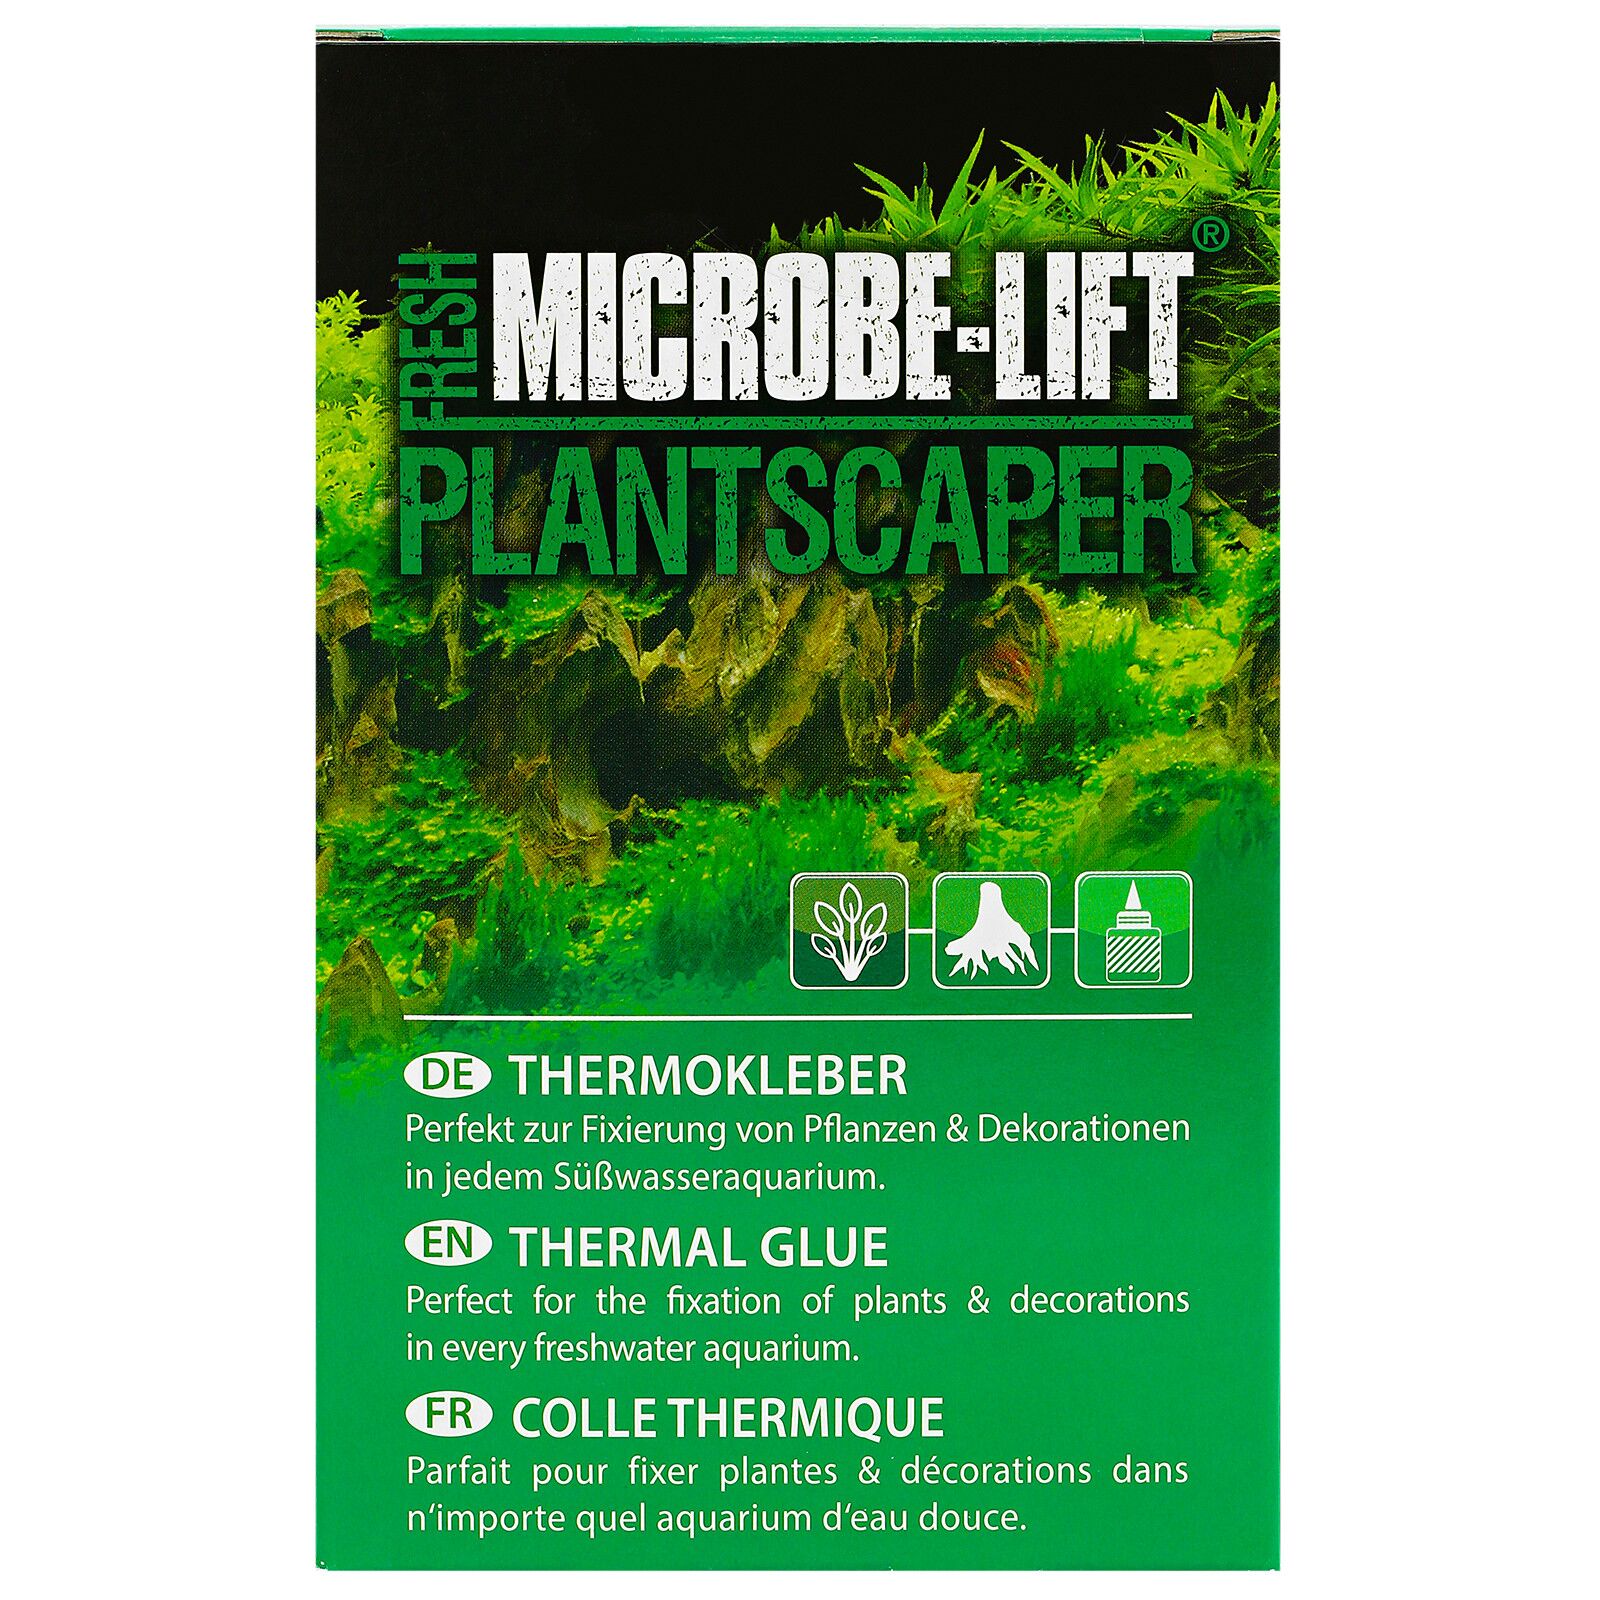 Microbe-Lift - Plantscaper - Thermo Glue